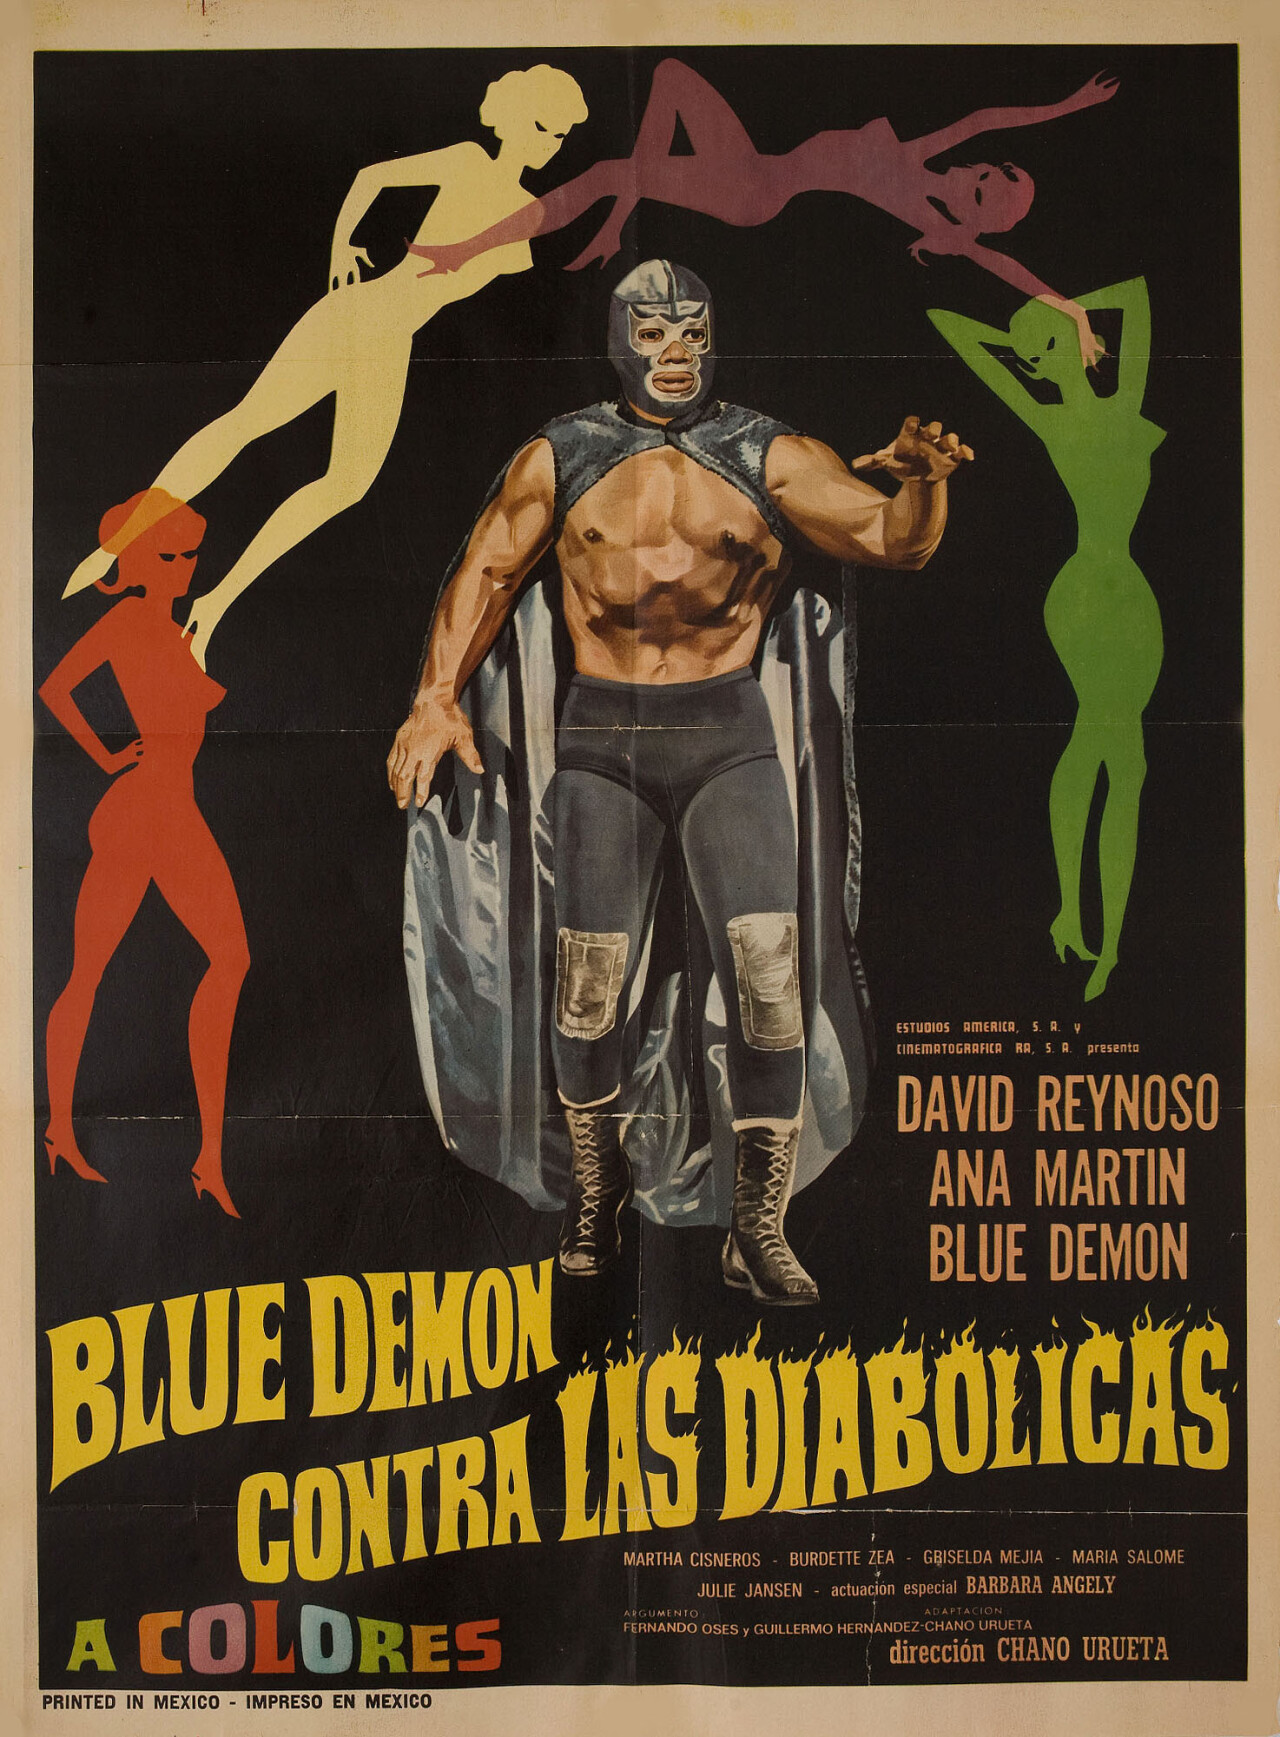 Синий Демон против дьяволов (Blue Demon contra las diabolicas, 1968), режиссёр Чано Уруэта, мексиканский постер к фильму (ужасы, 1968 год)